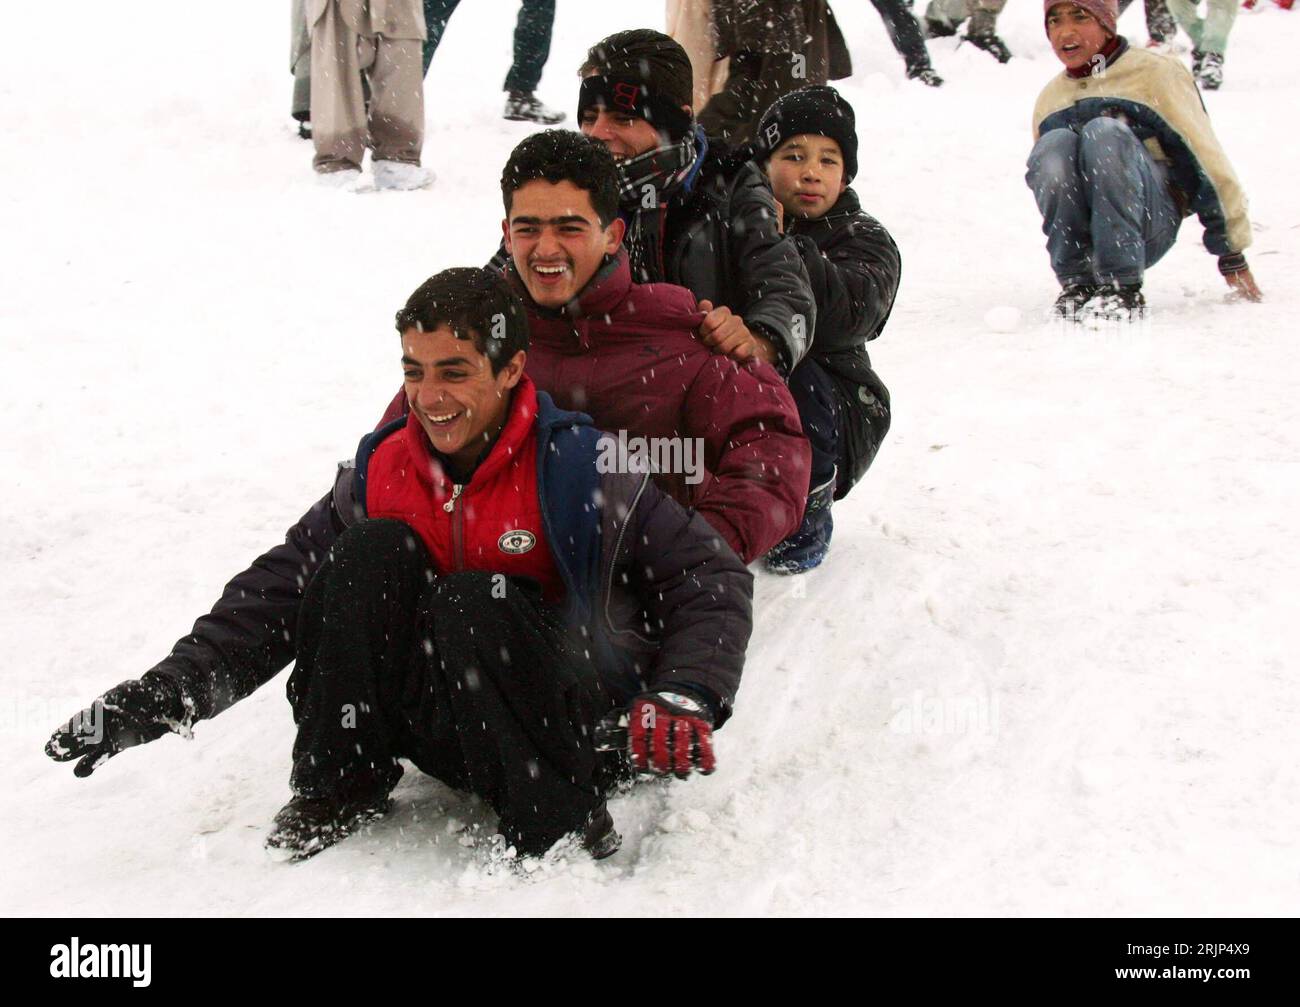 Bildnummer: 51087384  Datum: 15.01.2006  Copyright: imago/Xinhua Schnee in Kabul! Jungs rutschen eine Berg hinunter - PUBLICATIONxNOTxINxCHN, Personen; 2006, Kabul, Kaschmir, schneit, schneien, schneiend, Schnee, Schneefall, Schneefälle, Schneegestöber, Einheimische, Einheimischer, Junge, Kind, Kinder, rutscht, rutschend; , quer, Kbdig, Winter, Jahreszeit, Gruppenbild, Afghanistan,  , Stock Photo